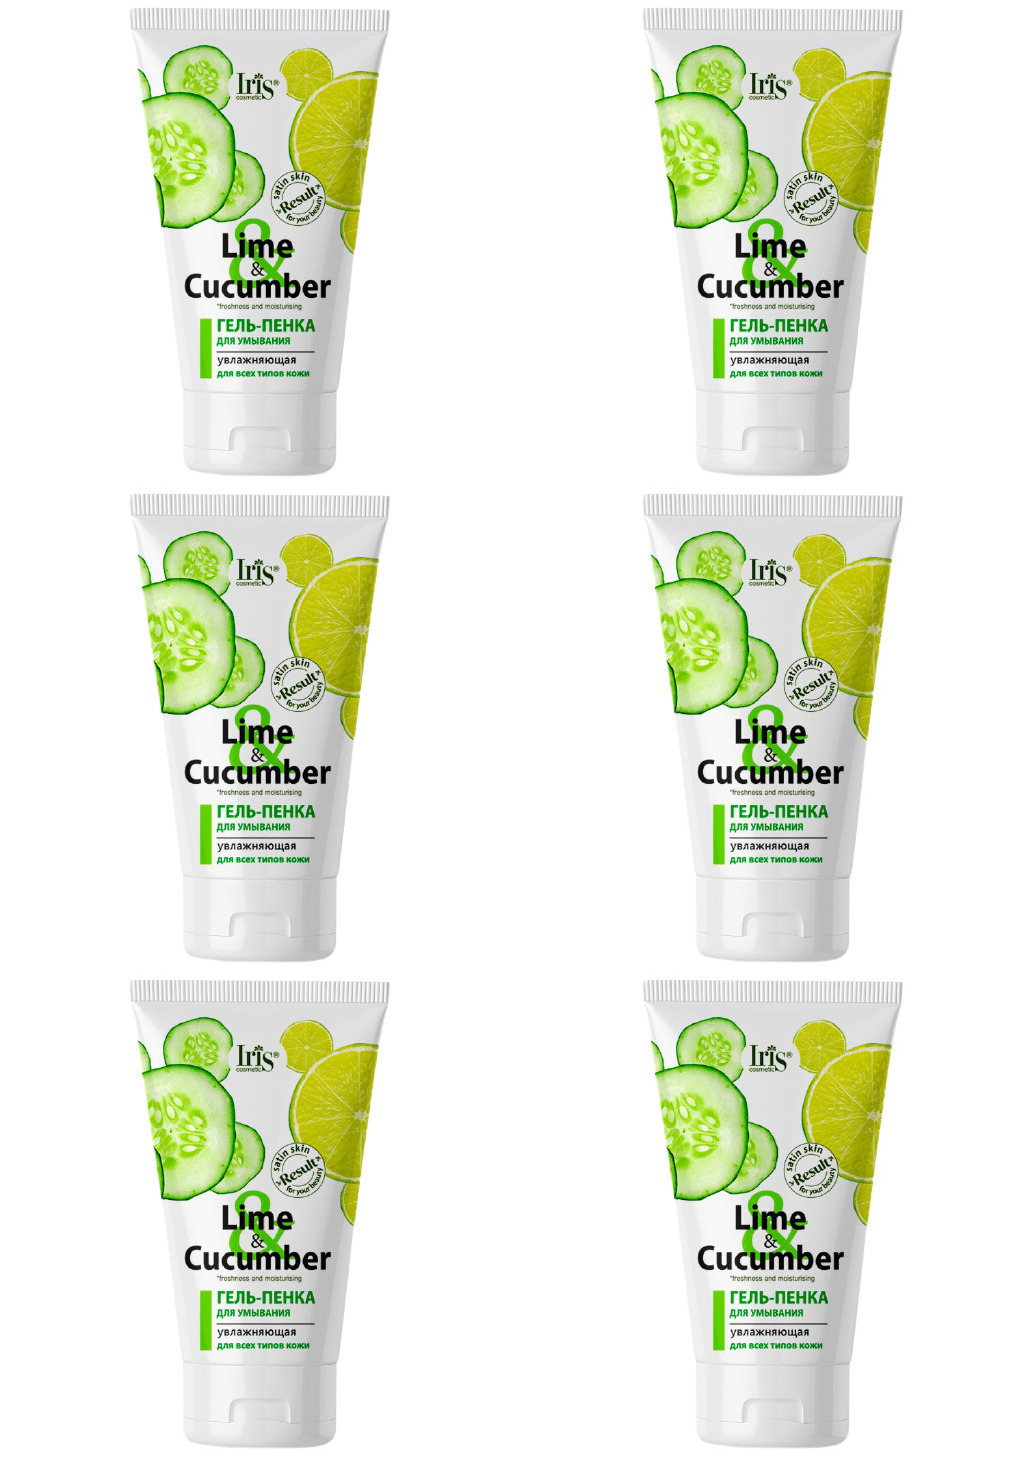 Гель-пенка Iris Lime & Cucumber для умывания Увлажняющая для всех типов кожи, 150мл, 6шт пенка для умывания ecolab увлажняющая 150 мл